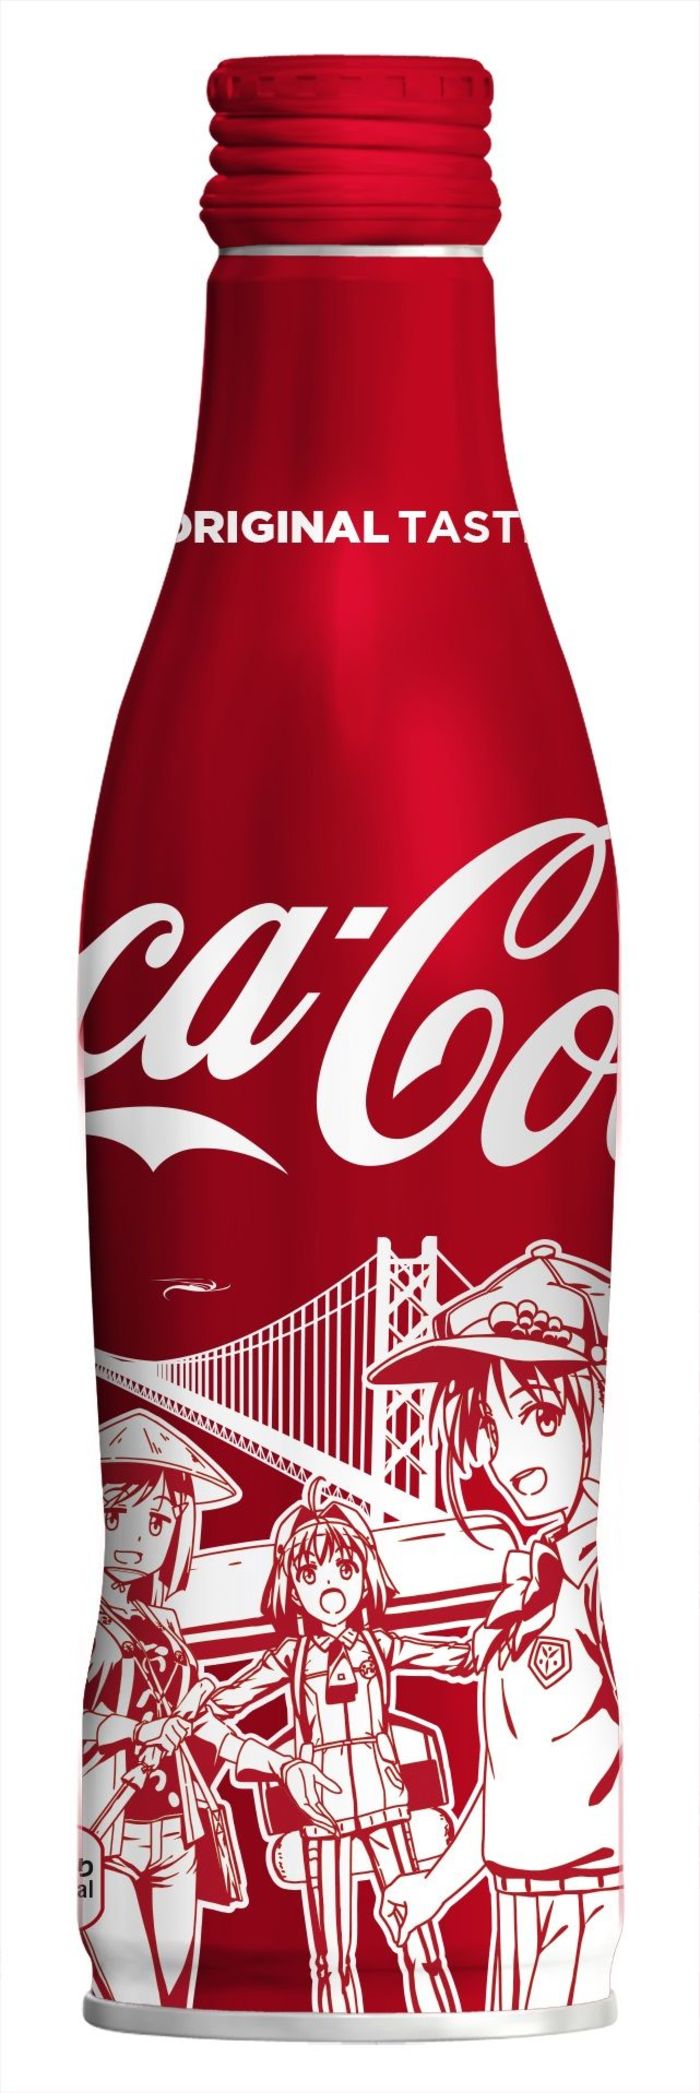 四国限定 おへんろ ボトルを発売 コカ コーラ 4日から 徳島ニュース 徳島新聞